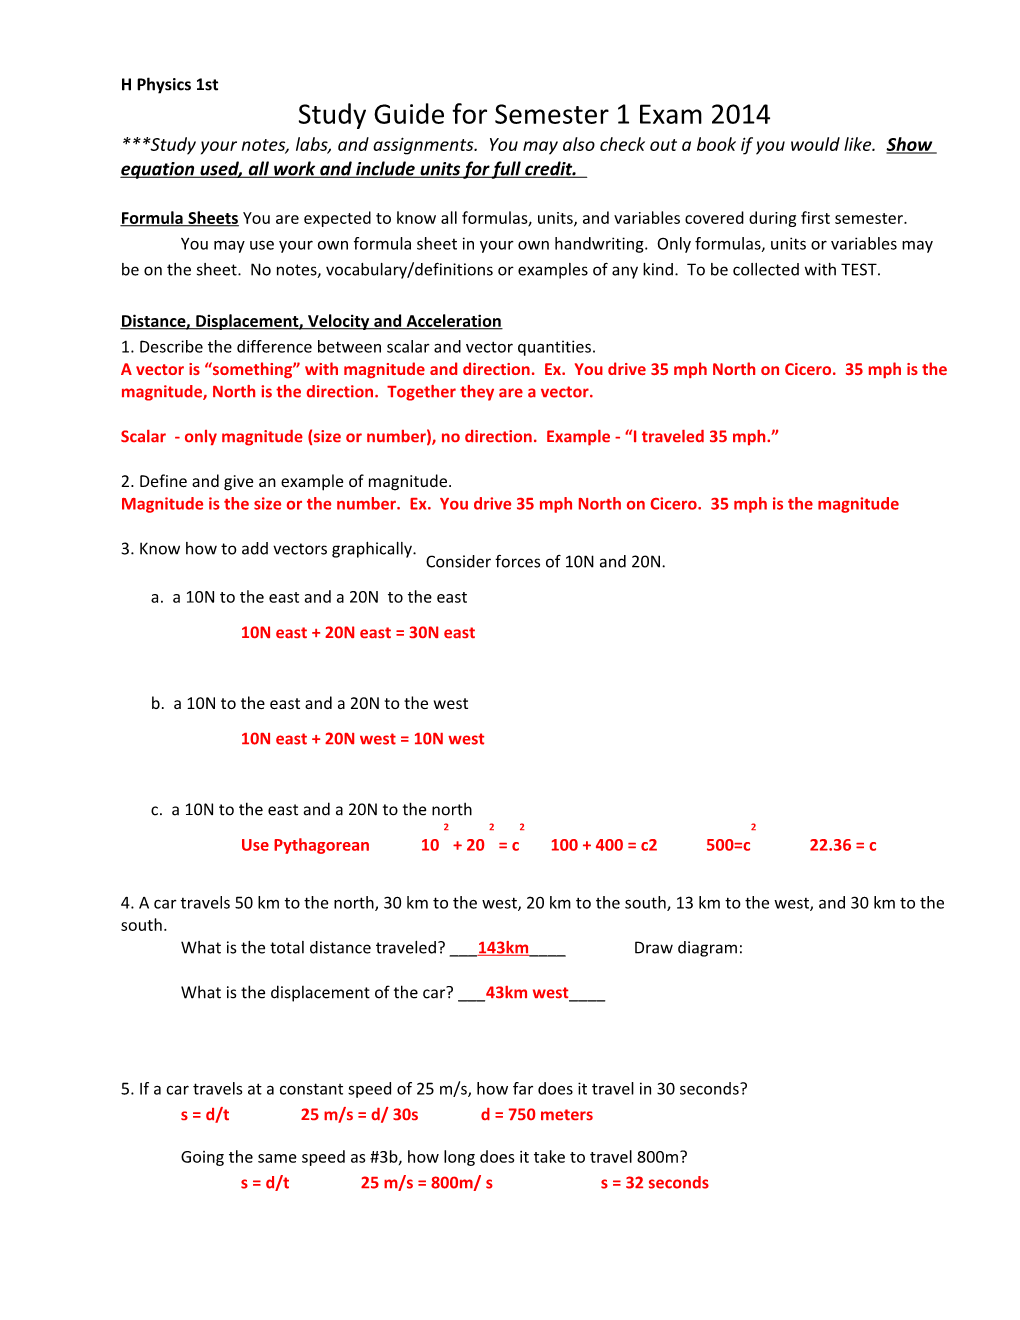 Study Guide for Semester 1 Exam 2014